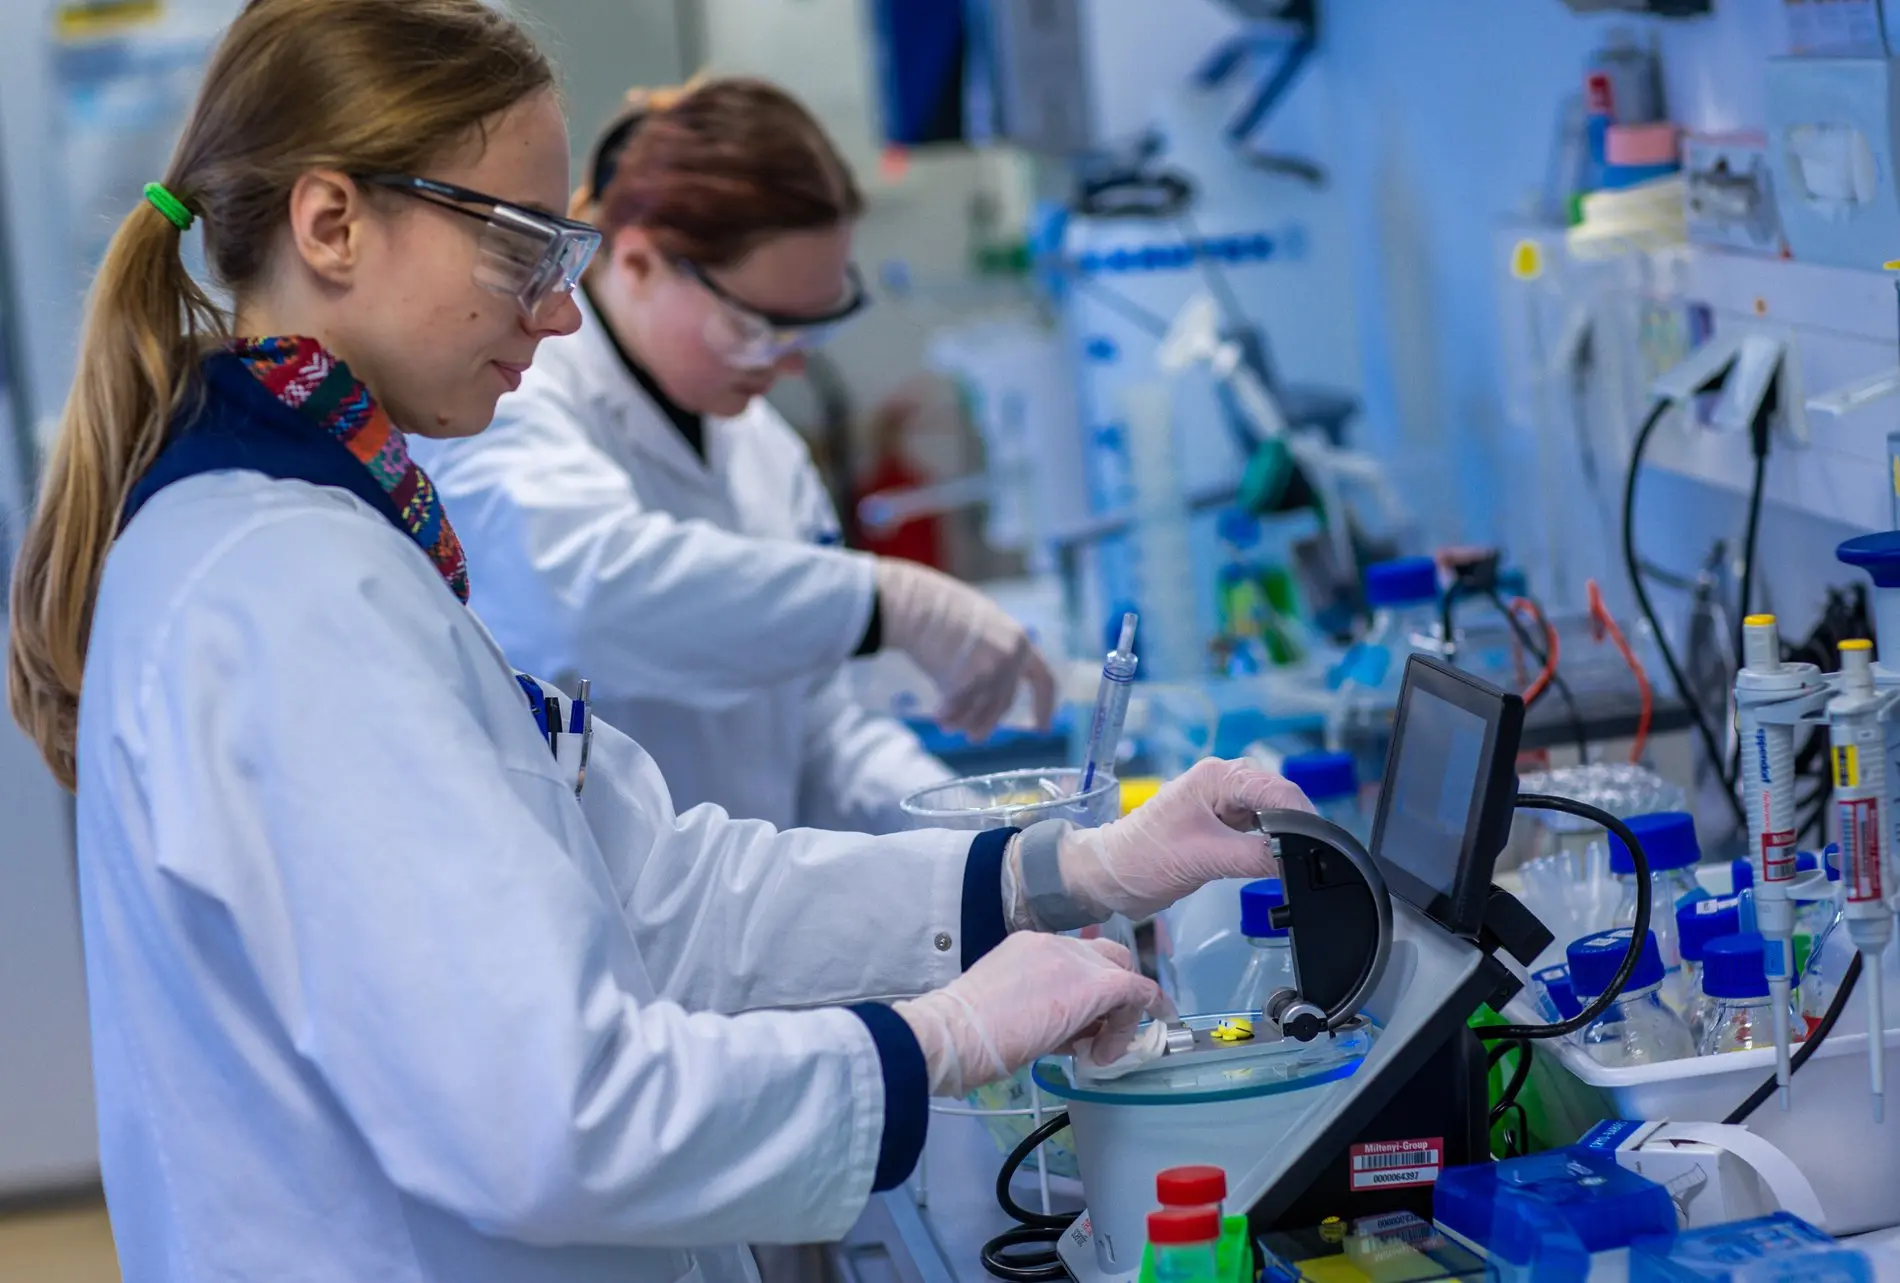 Zwei Wissenschaftlerinnen arbeiten mit Schutzbrillen in einem Labor.